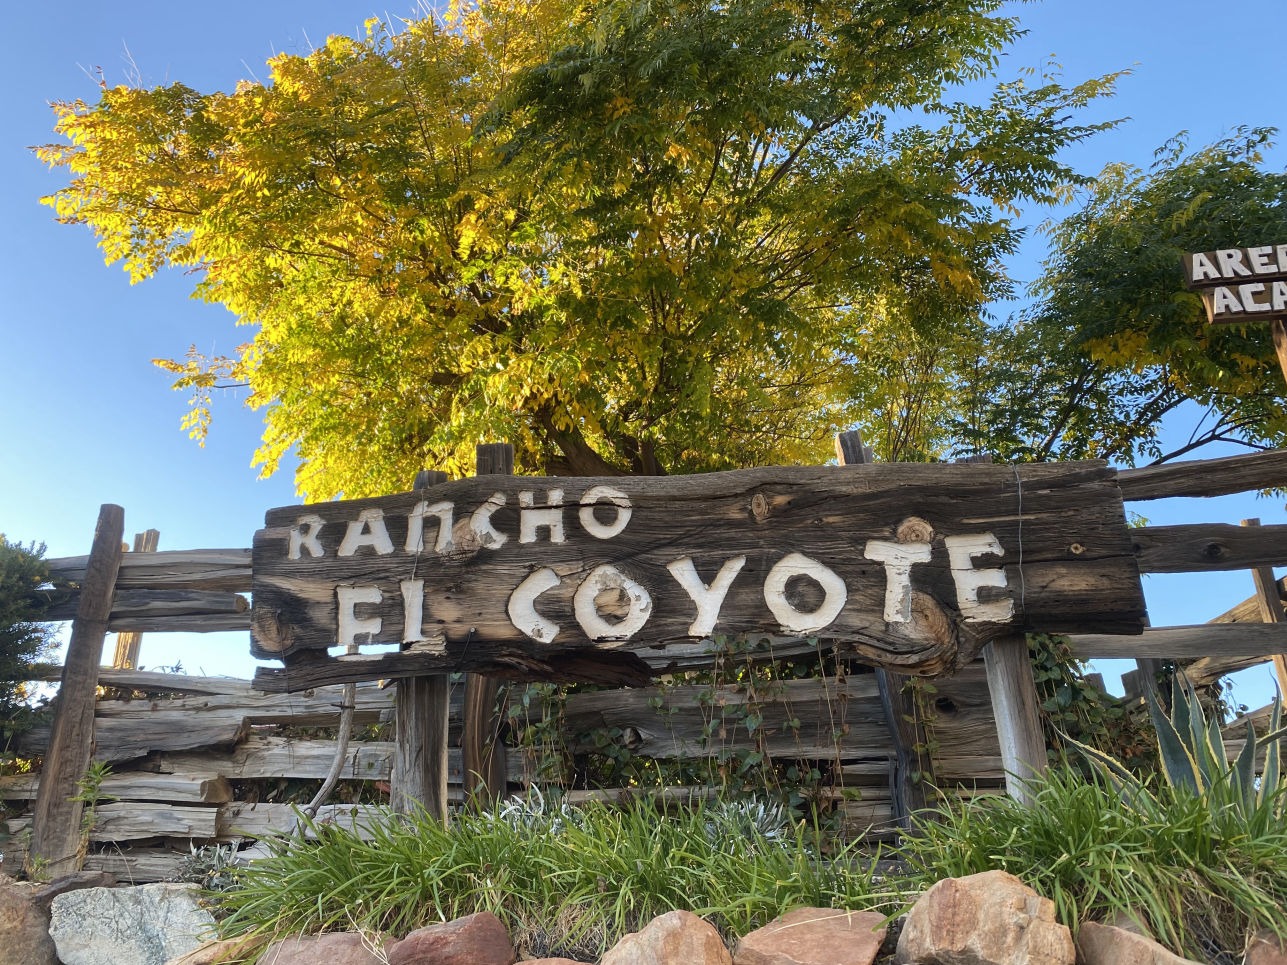 Rancho El Coyote